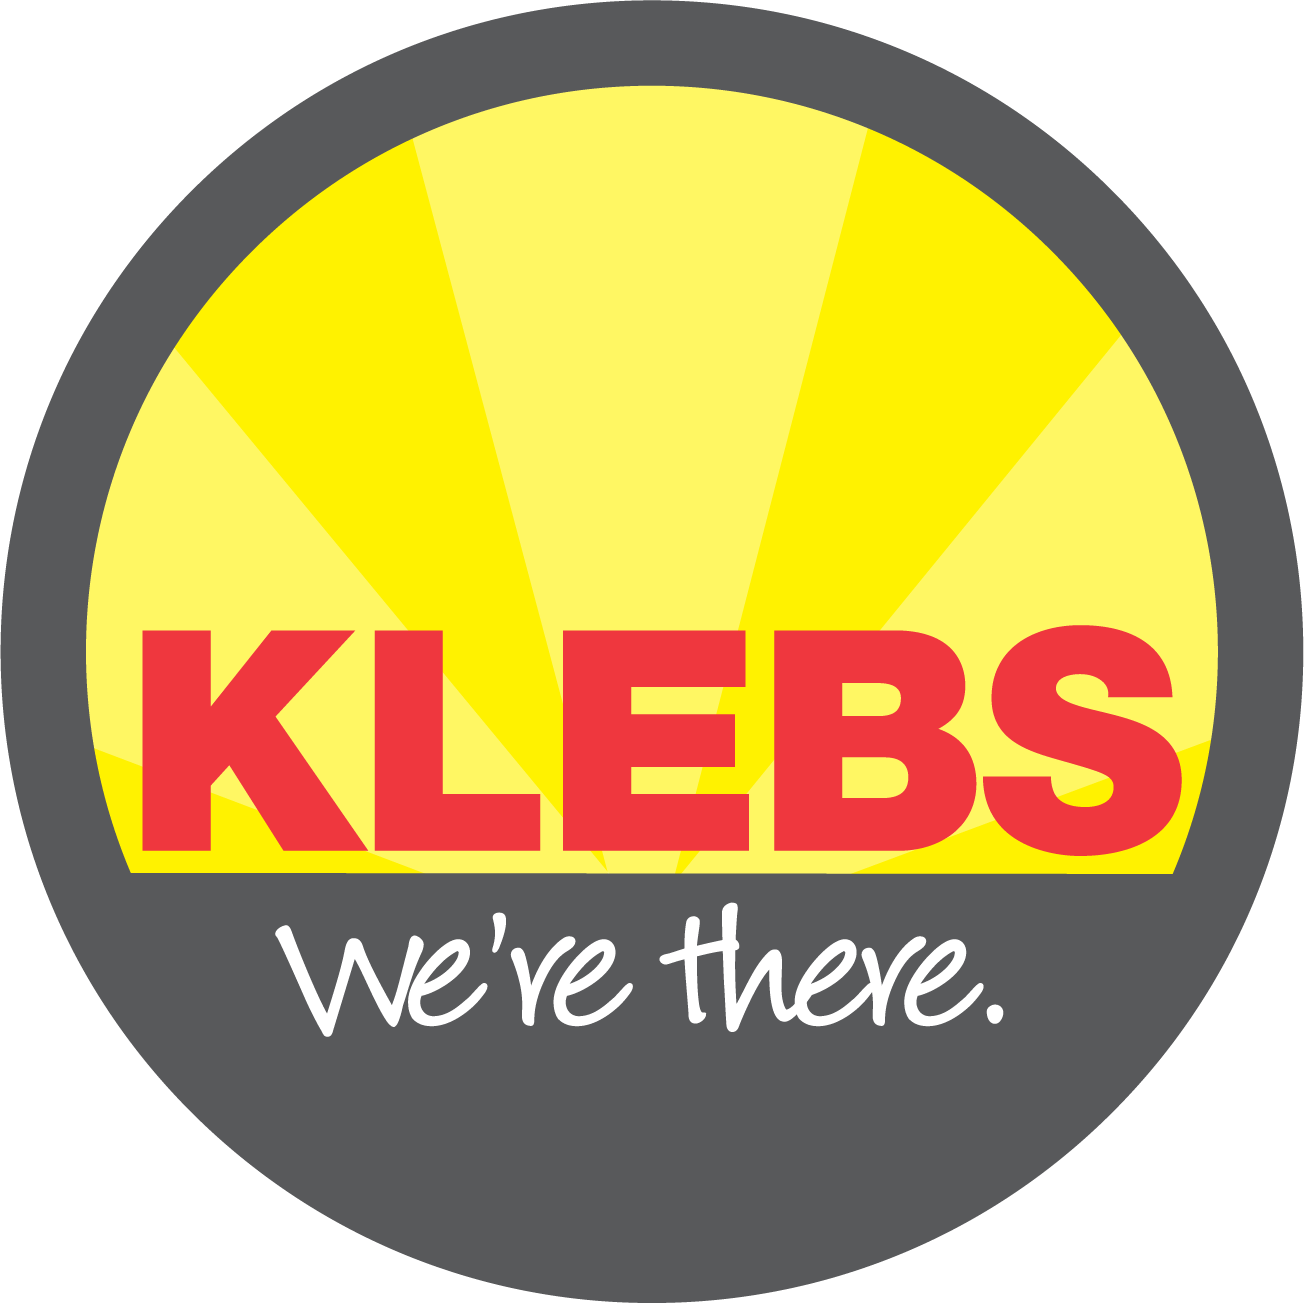 KLEBS Mechanical